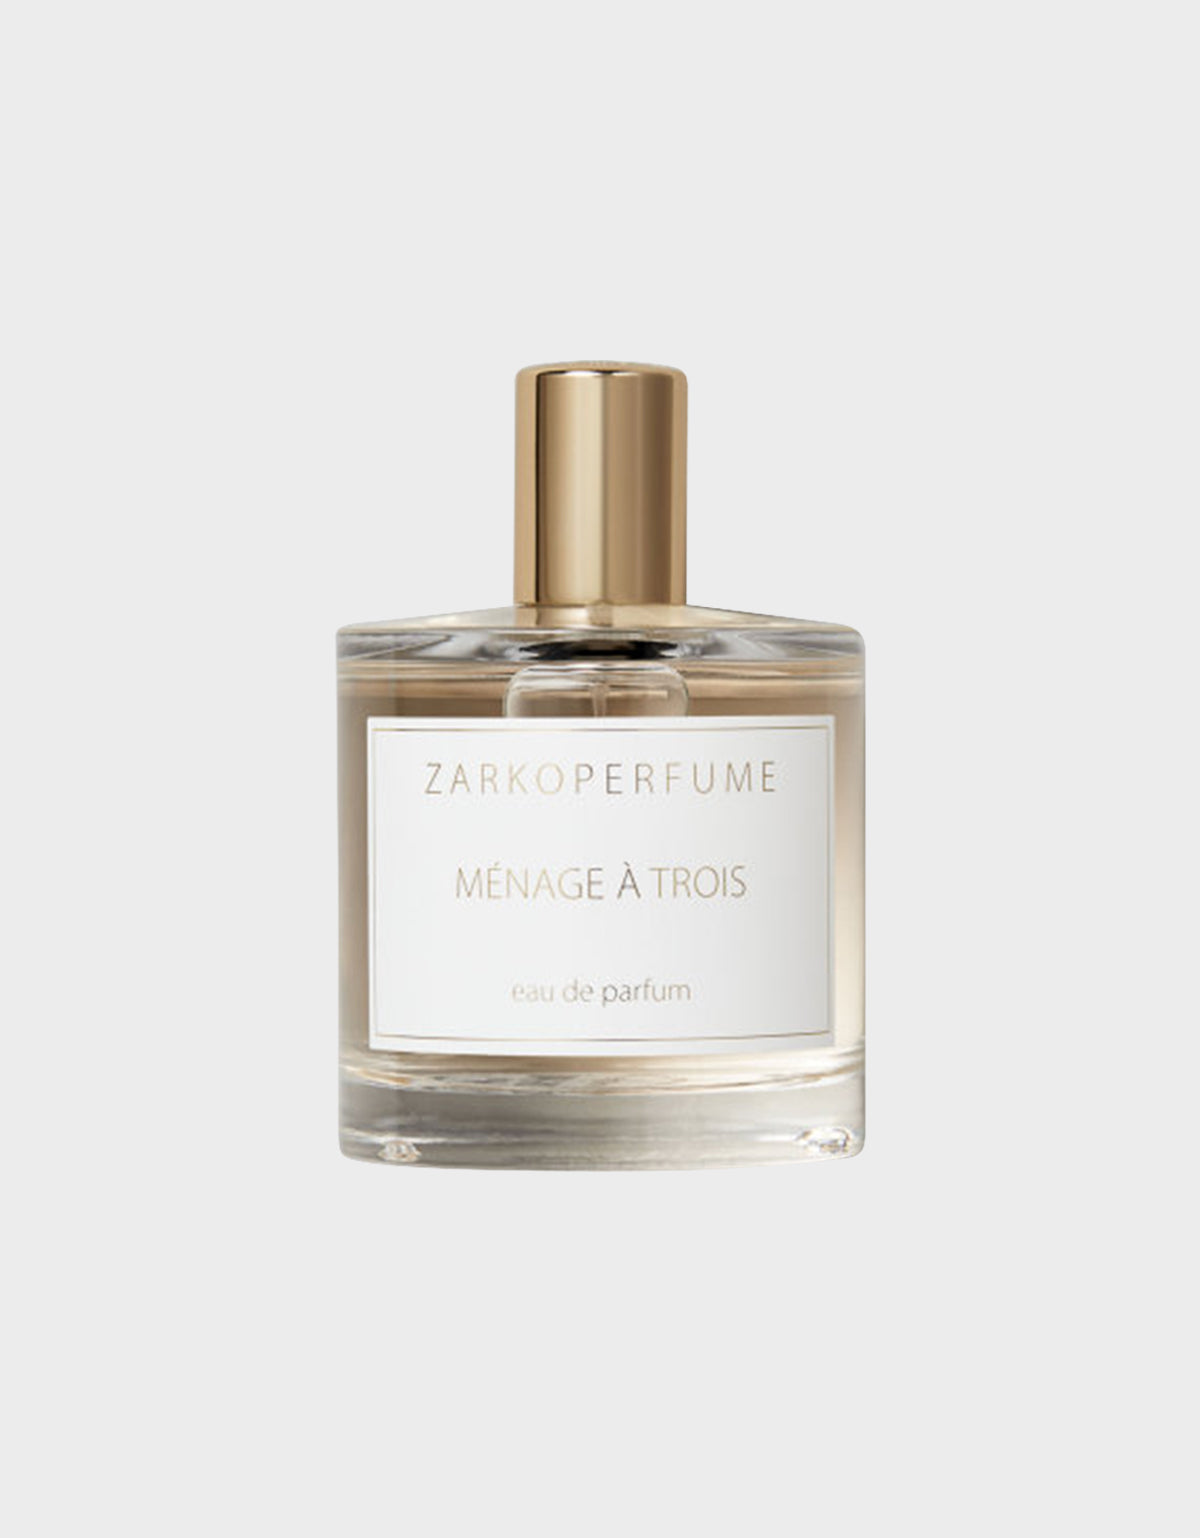 The Menage a trois by ZARKOPERFUME -Eau De Parfum- Online in UAE Zahaar